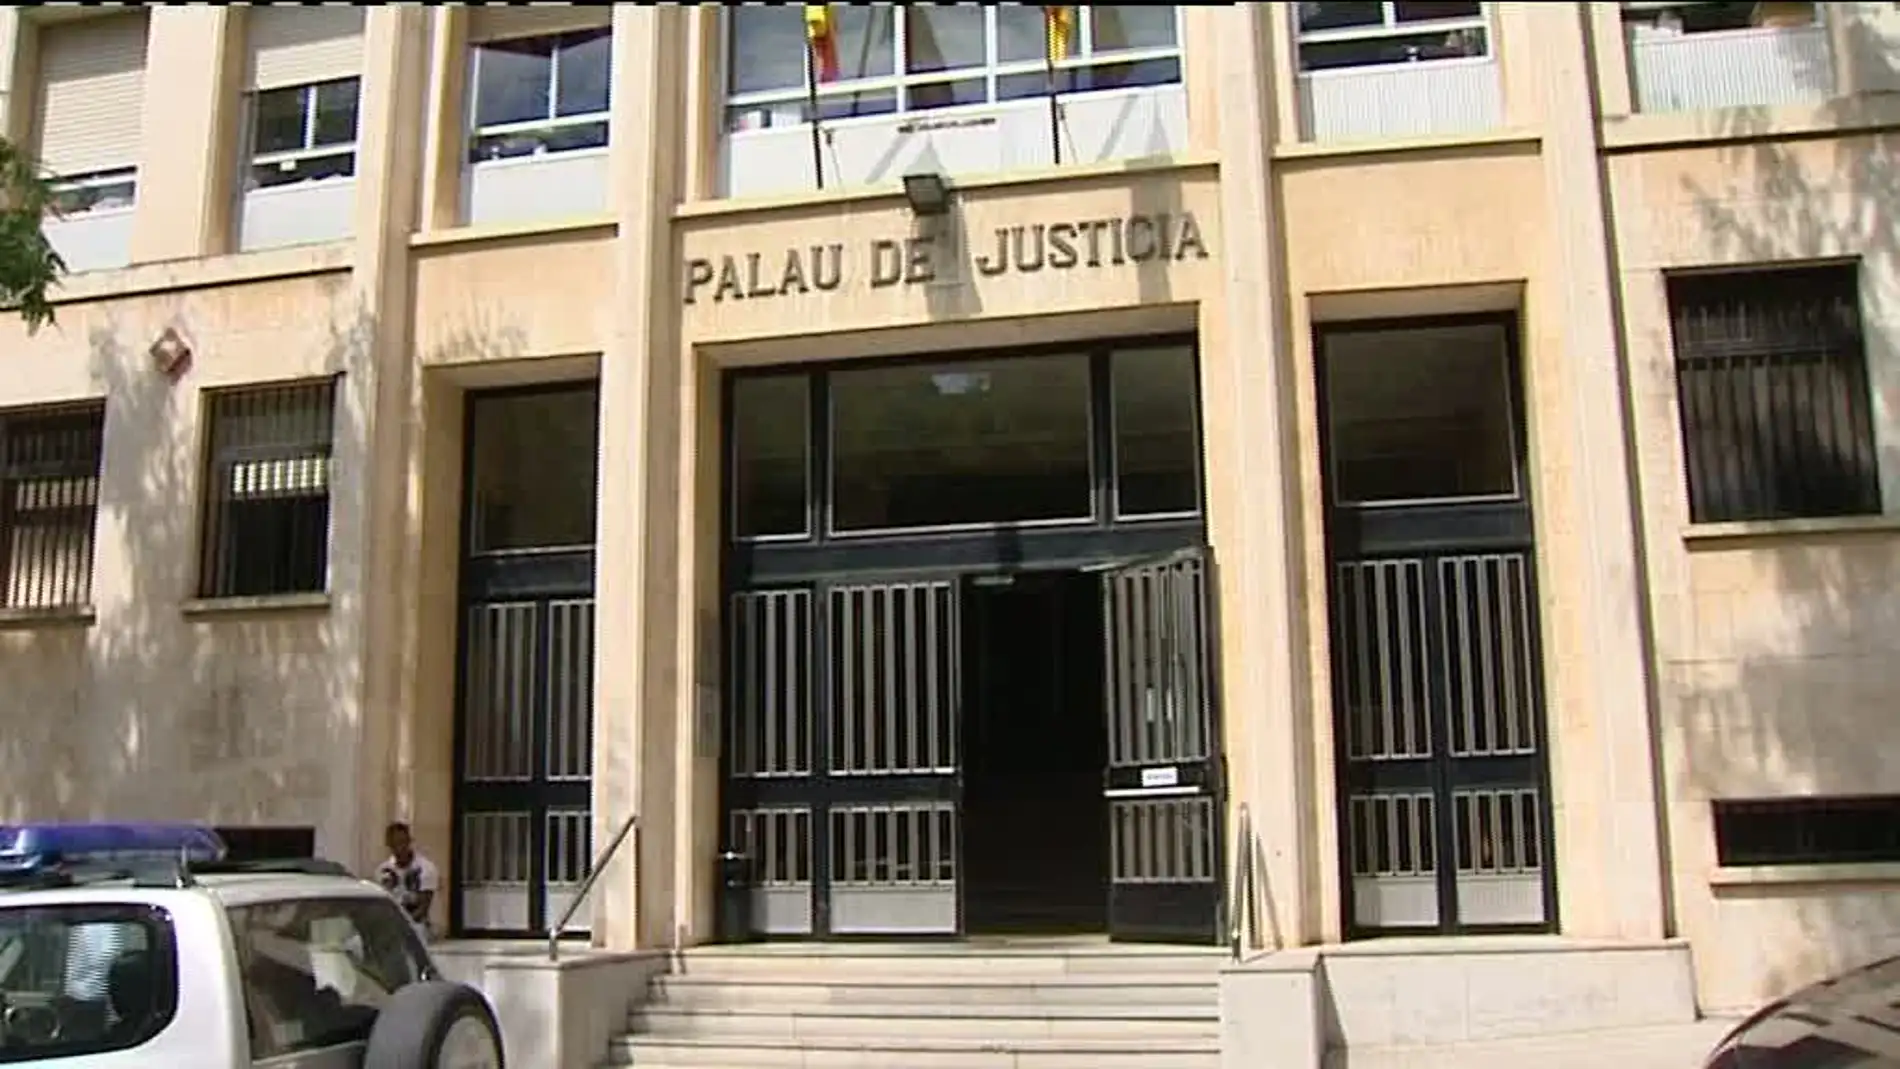 La acusada deberá comparecer en los juzgados de guardia de Tarragona